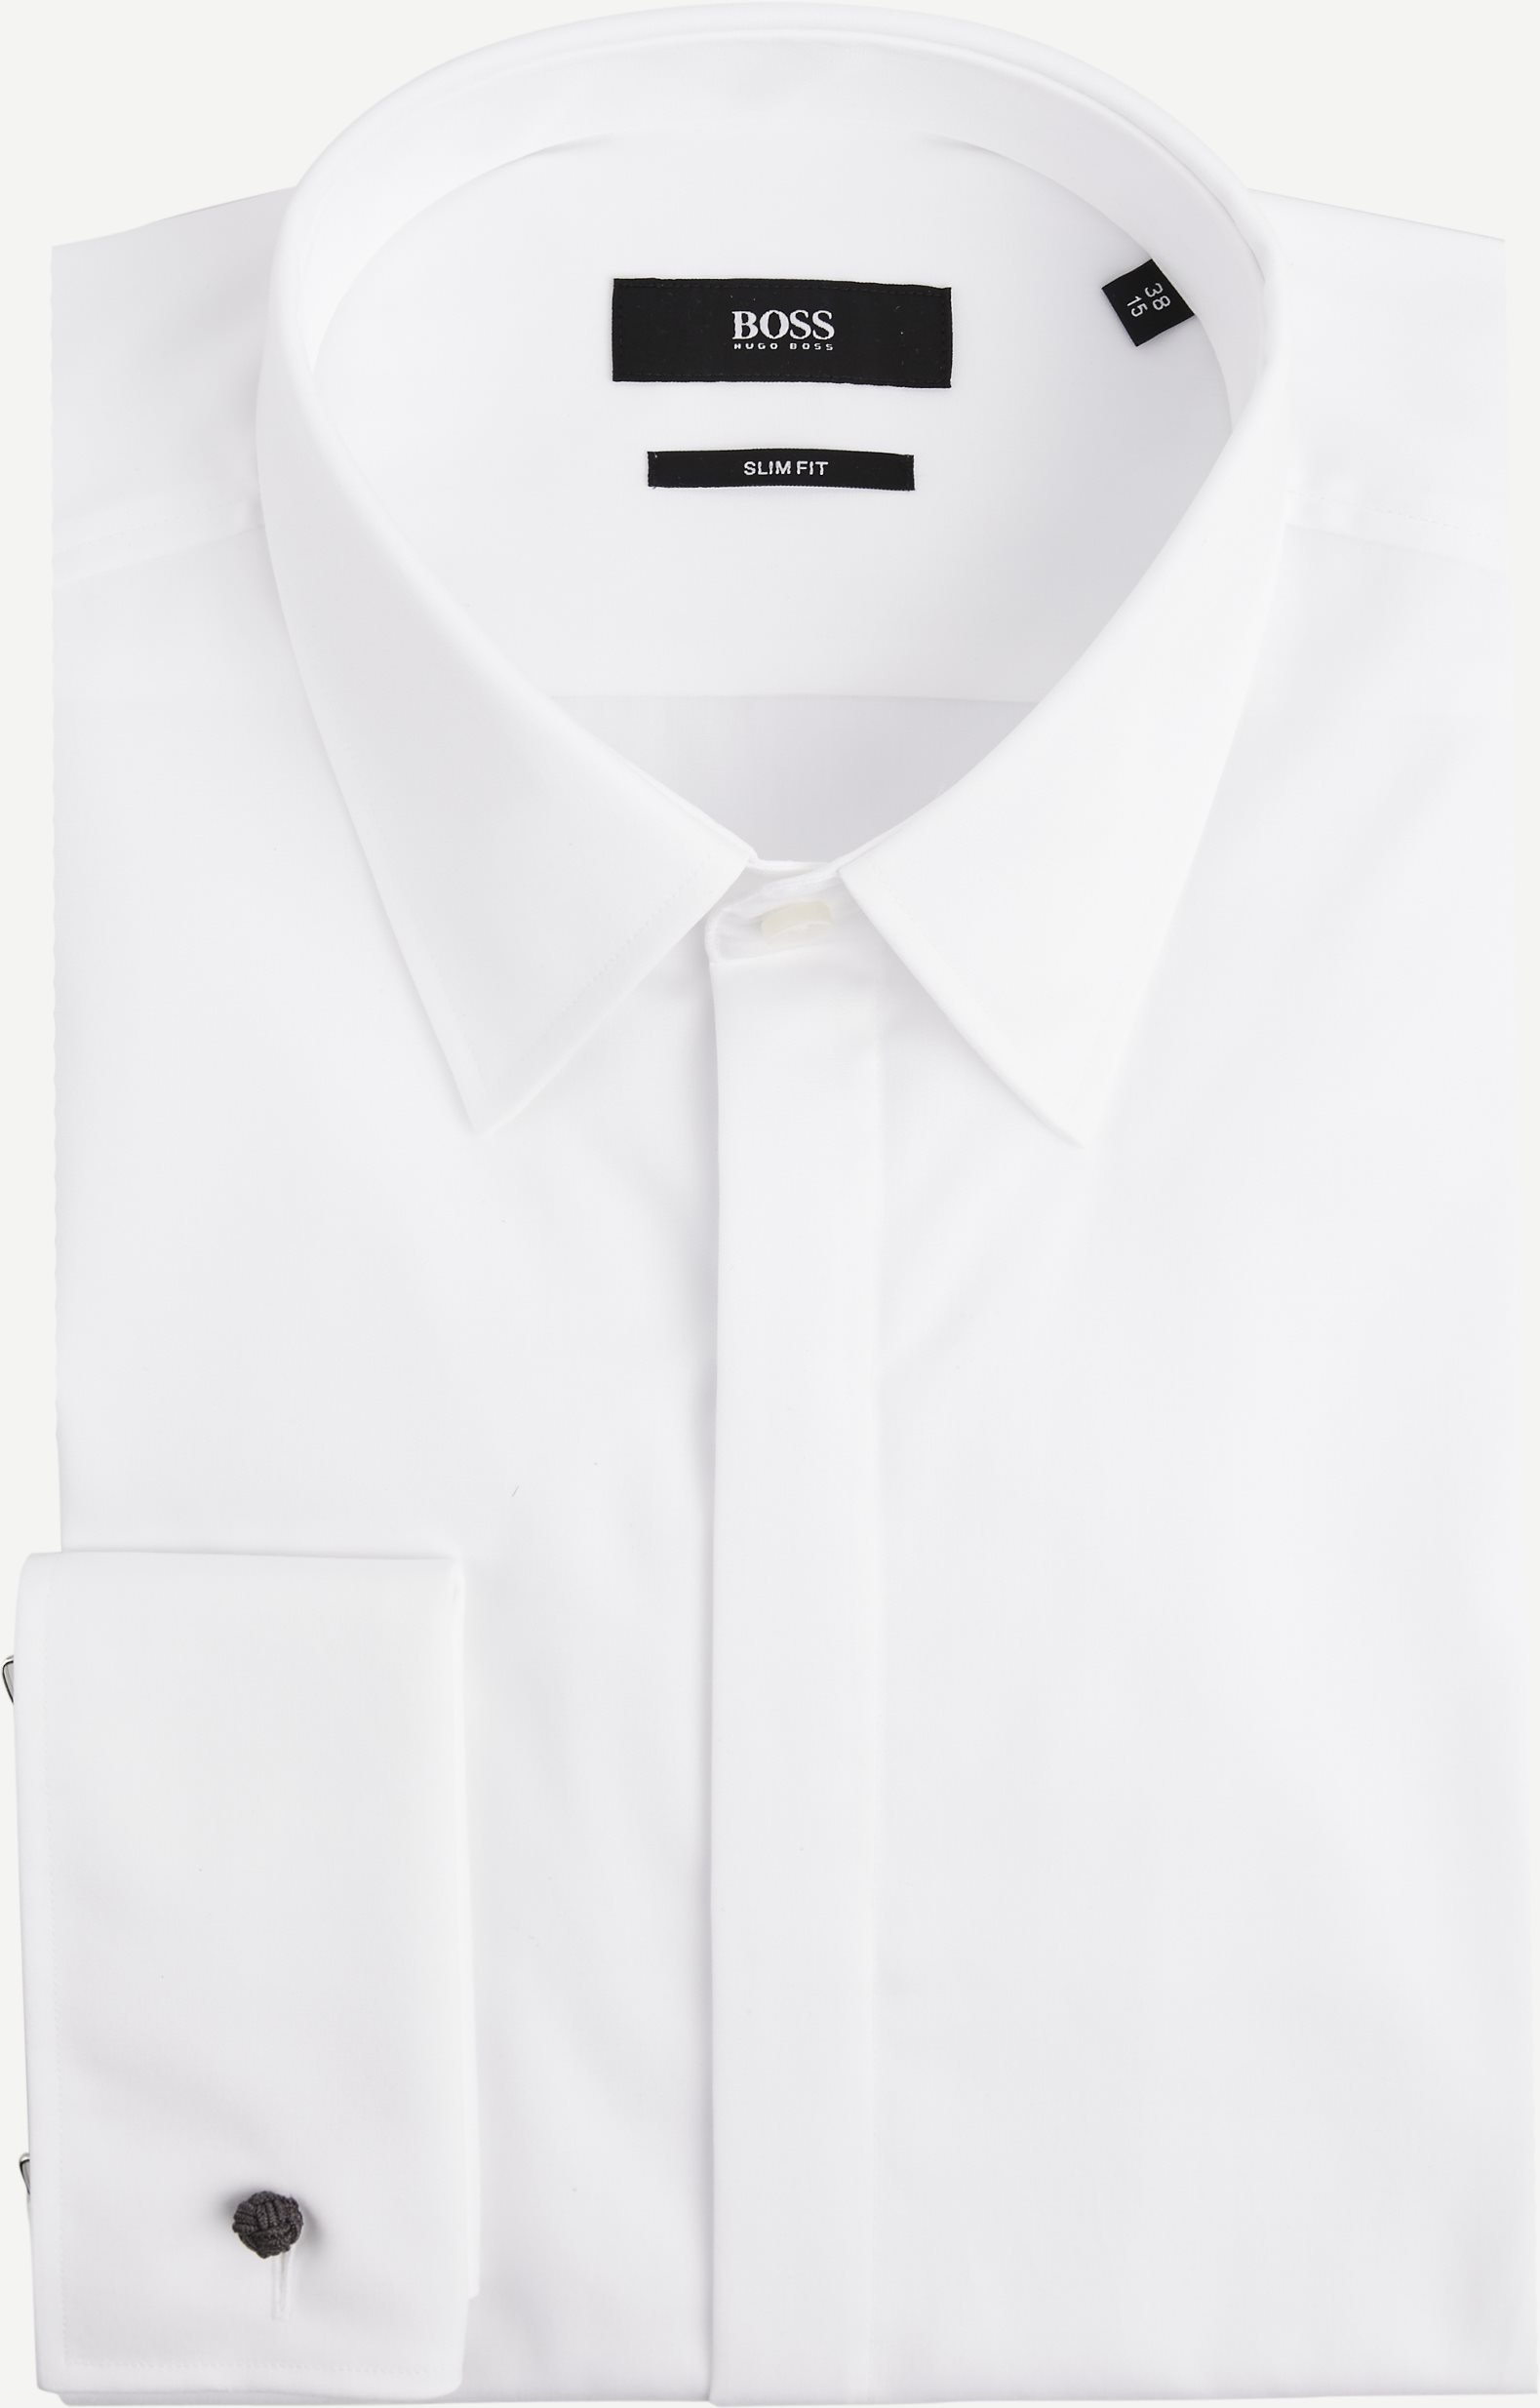 Ilias Raucherhemd - Hemden - Slim fit - Weiß